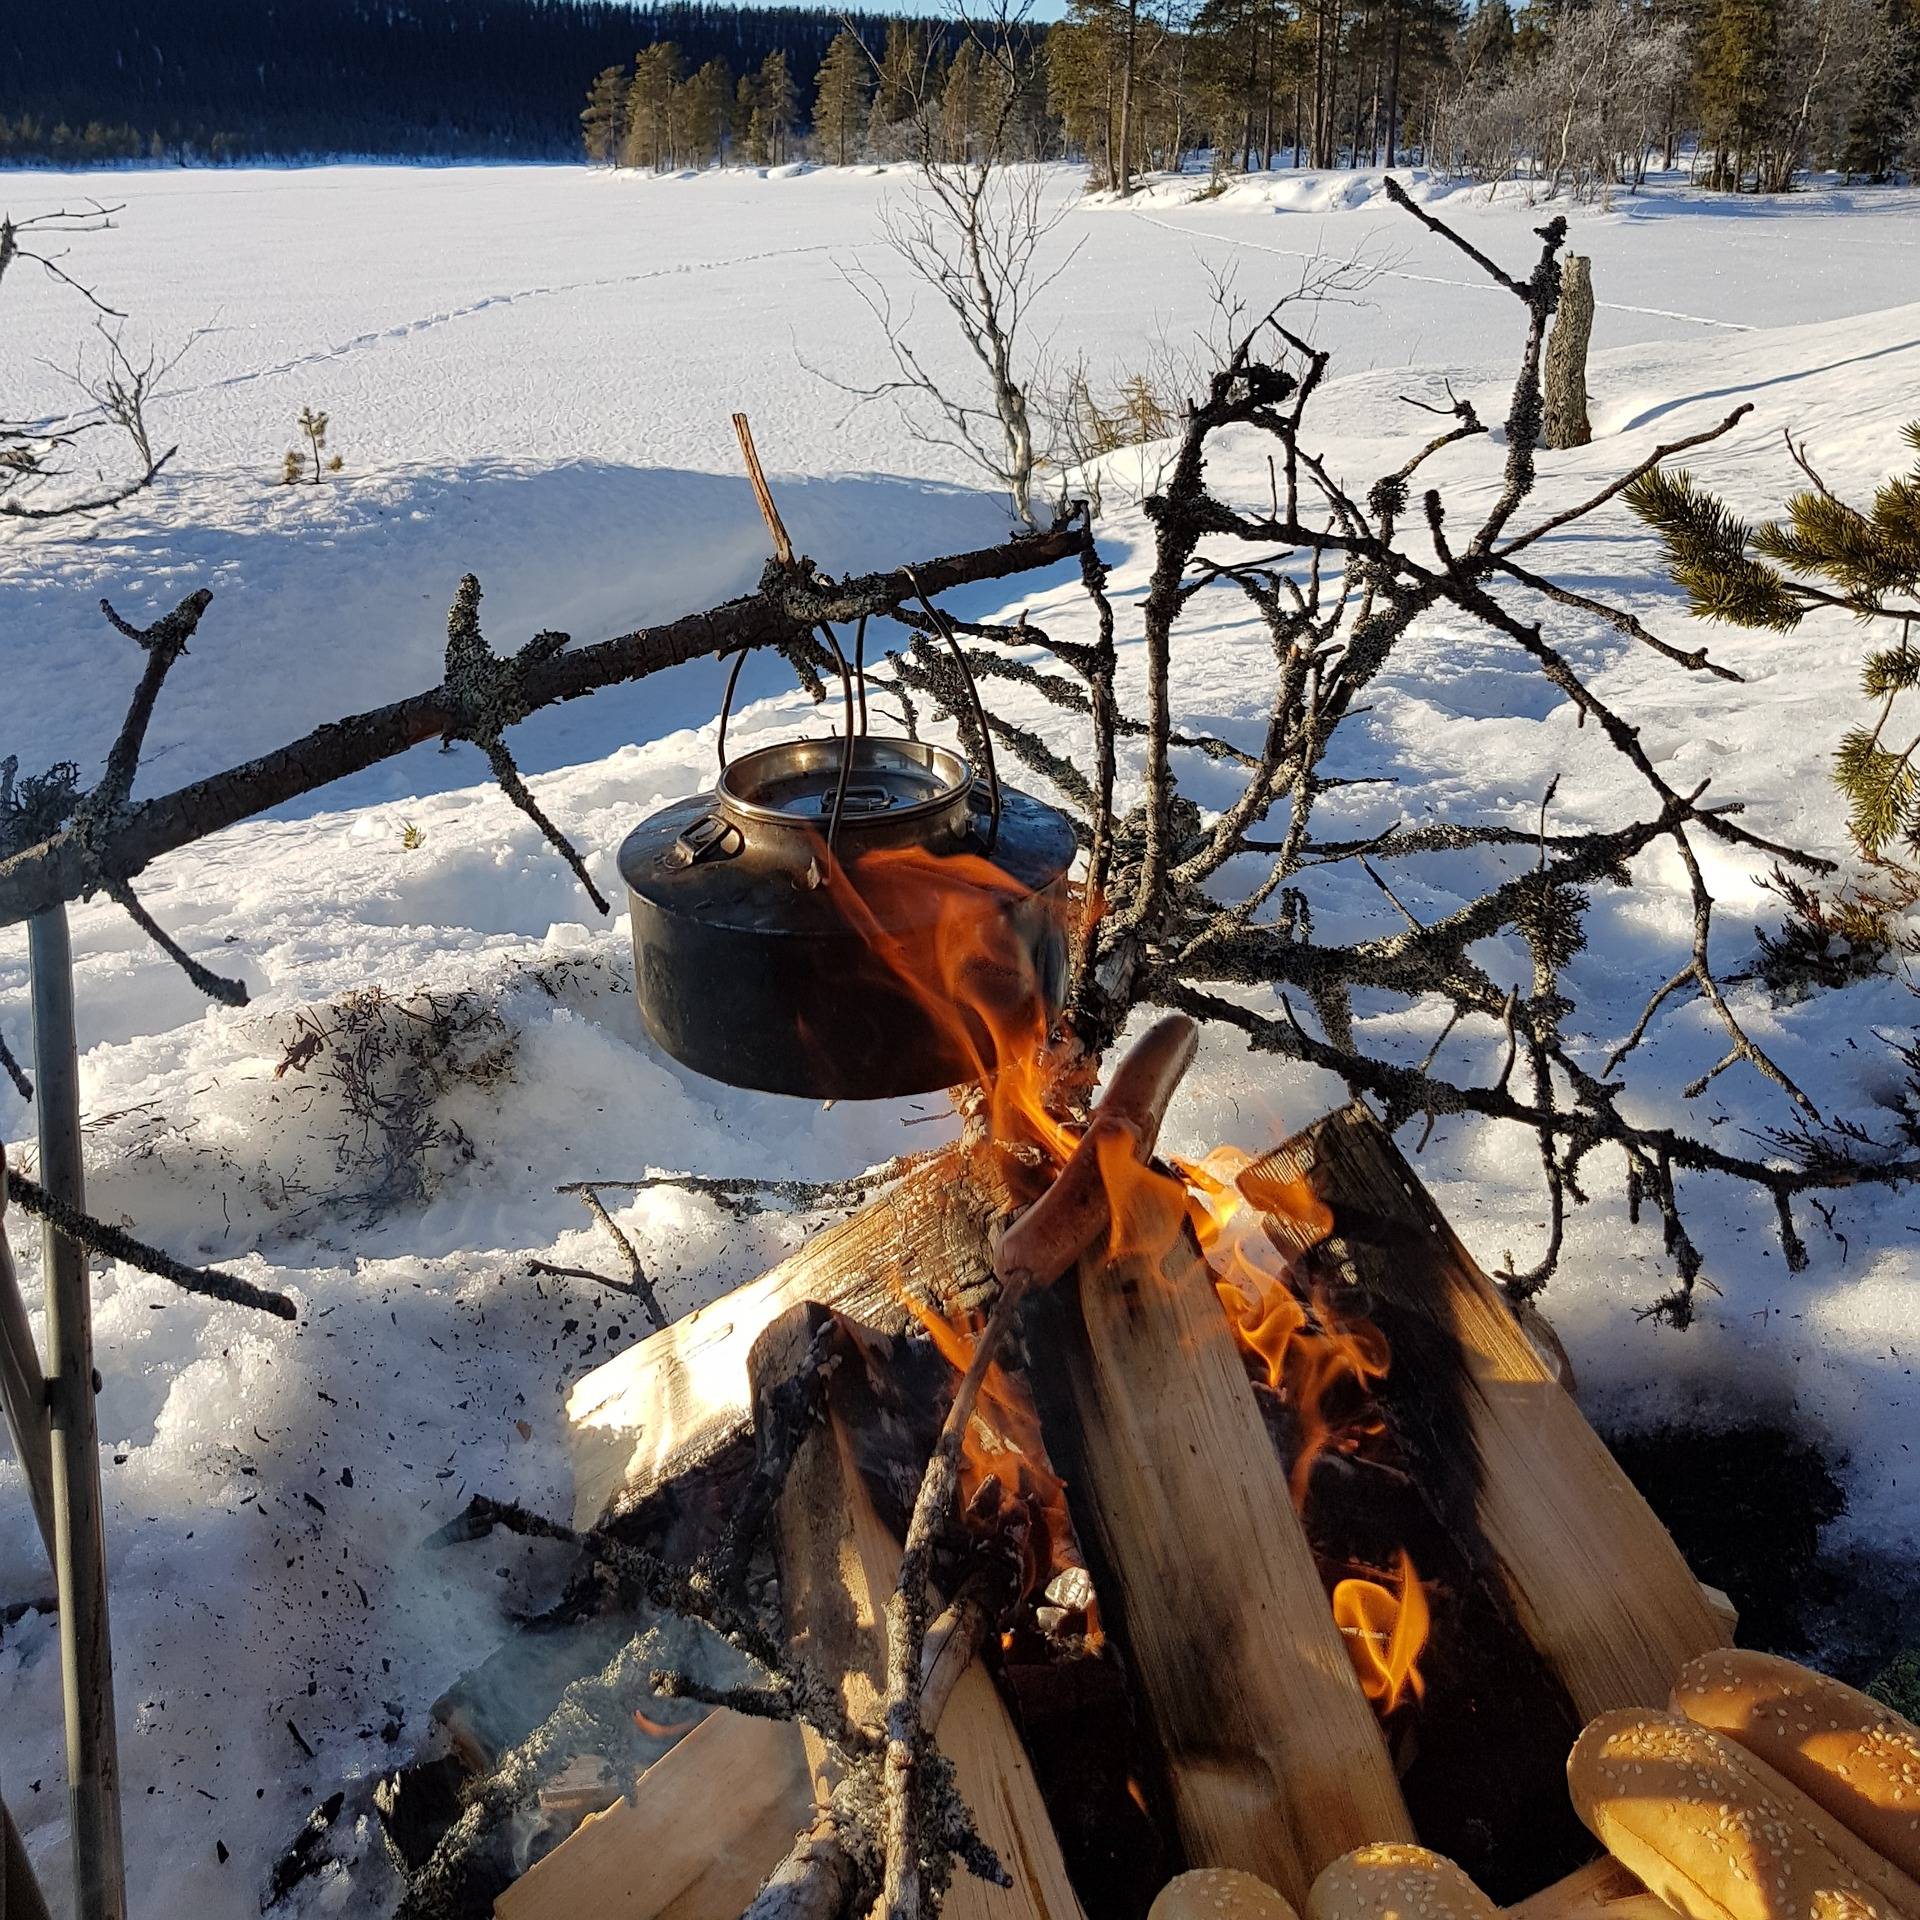 火炉炉火的朋友圈文案:冬日火炉边的炉火,这个季节最温暖的的诗